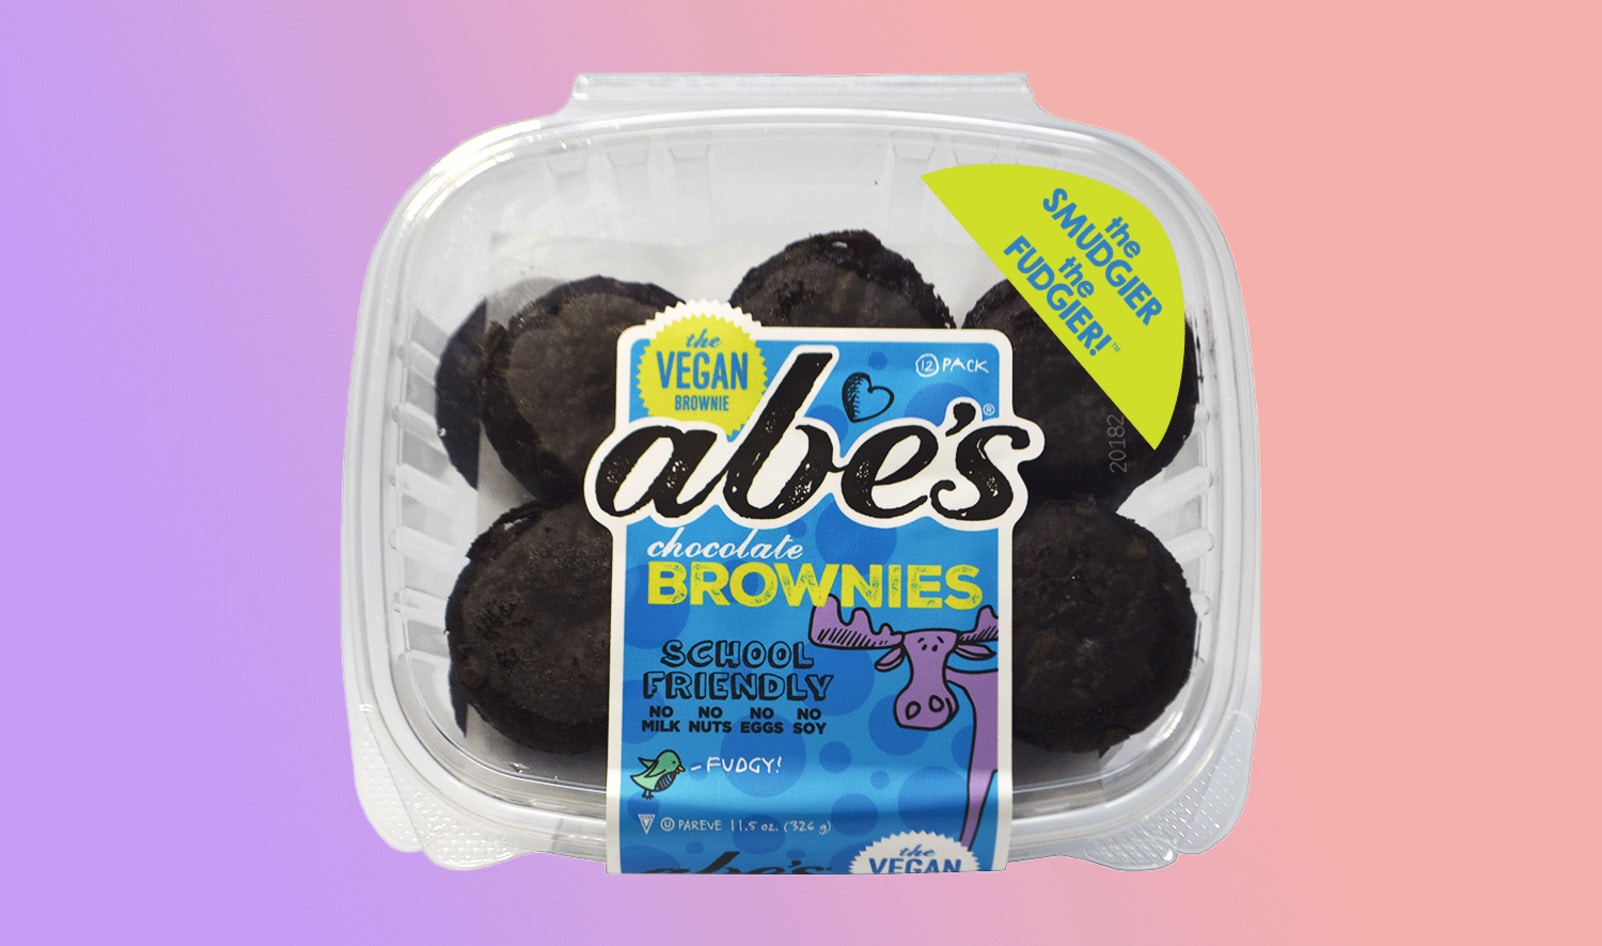 Muffin Brand Abe’s Launches Vegan Fudge Brownies